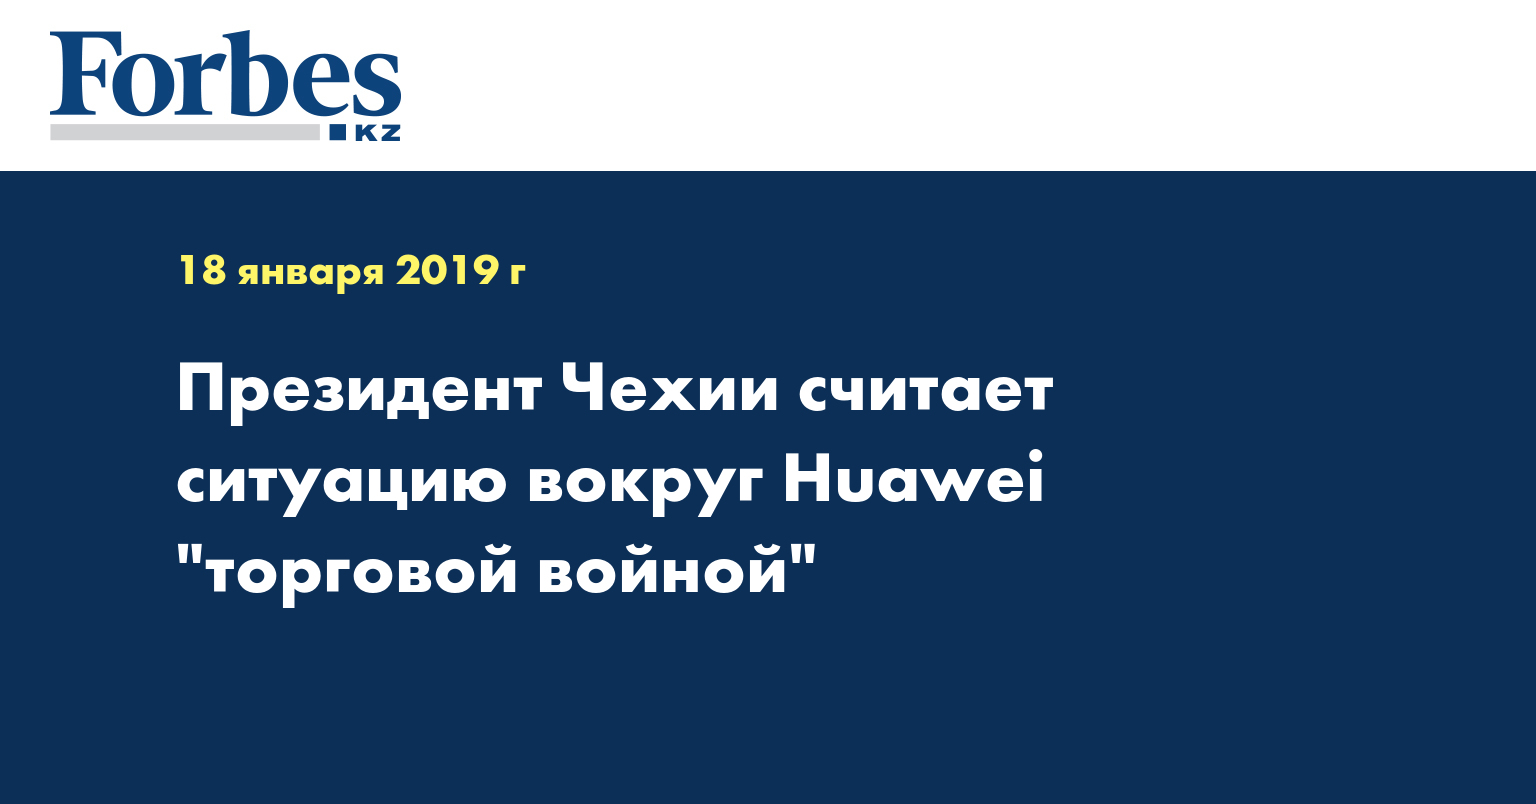 Президент Чехии считает ситуацию вокруг Huawei 